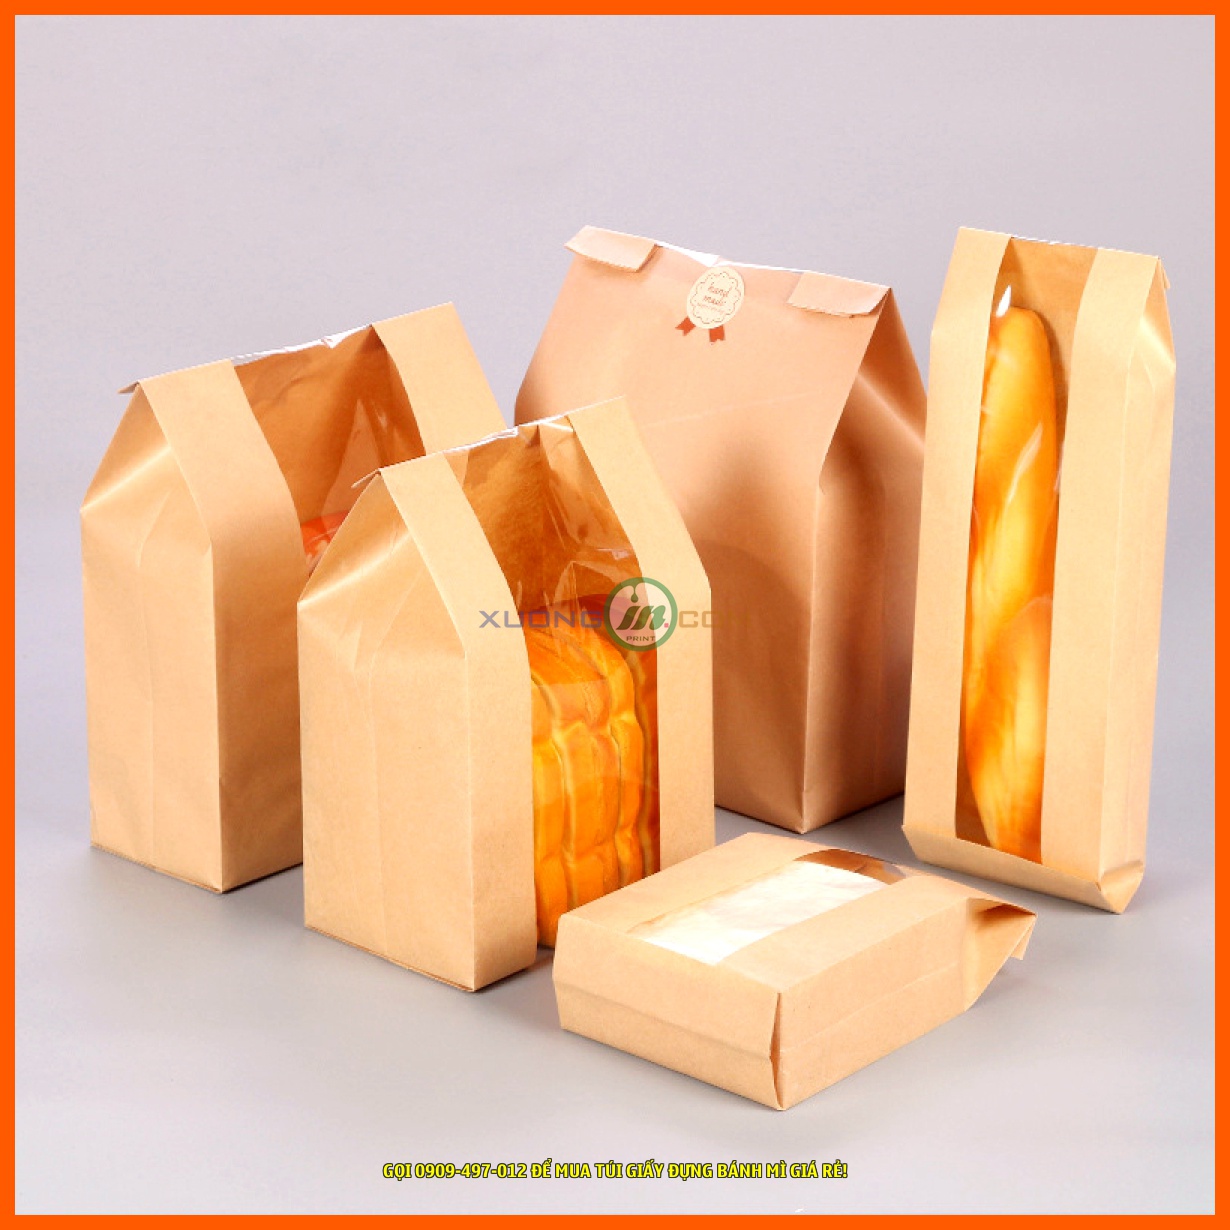 Địa chỉ bán túi giấy đựng bánh mì tốt nhất tại TpHCM là 26/4A2 Nguyễn Văn Quá, Quận 12, TpHCM.